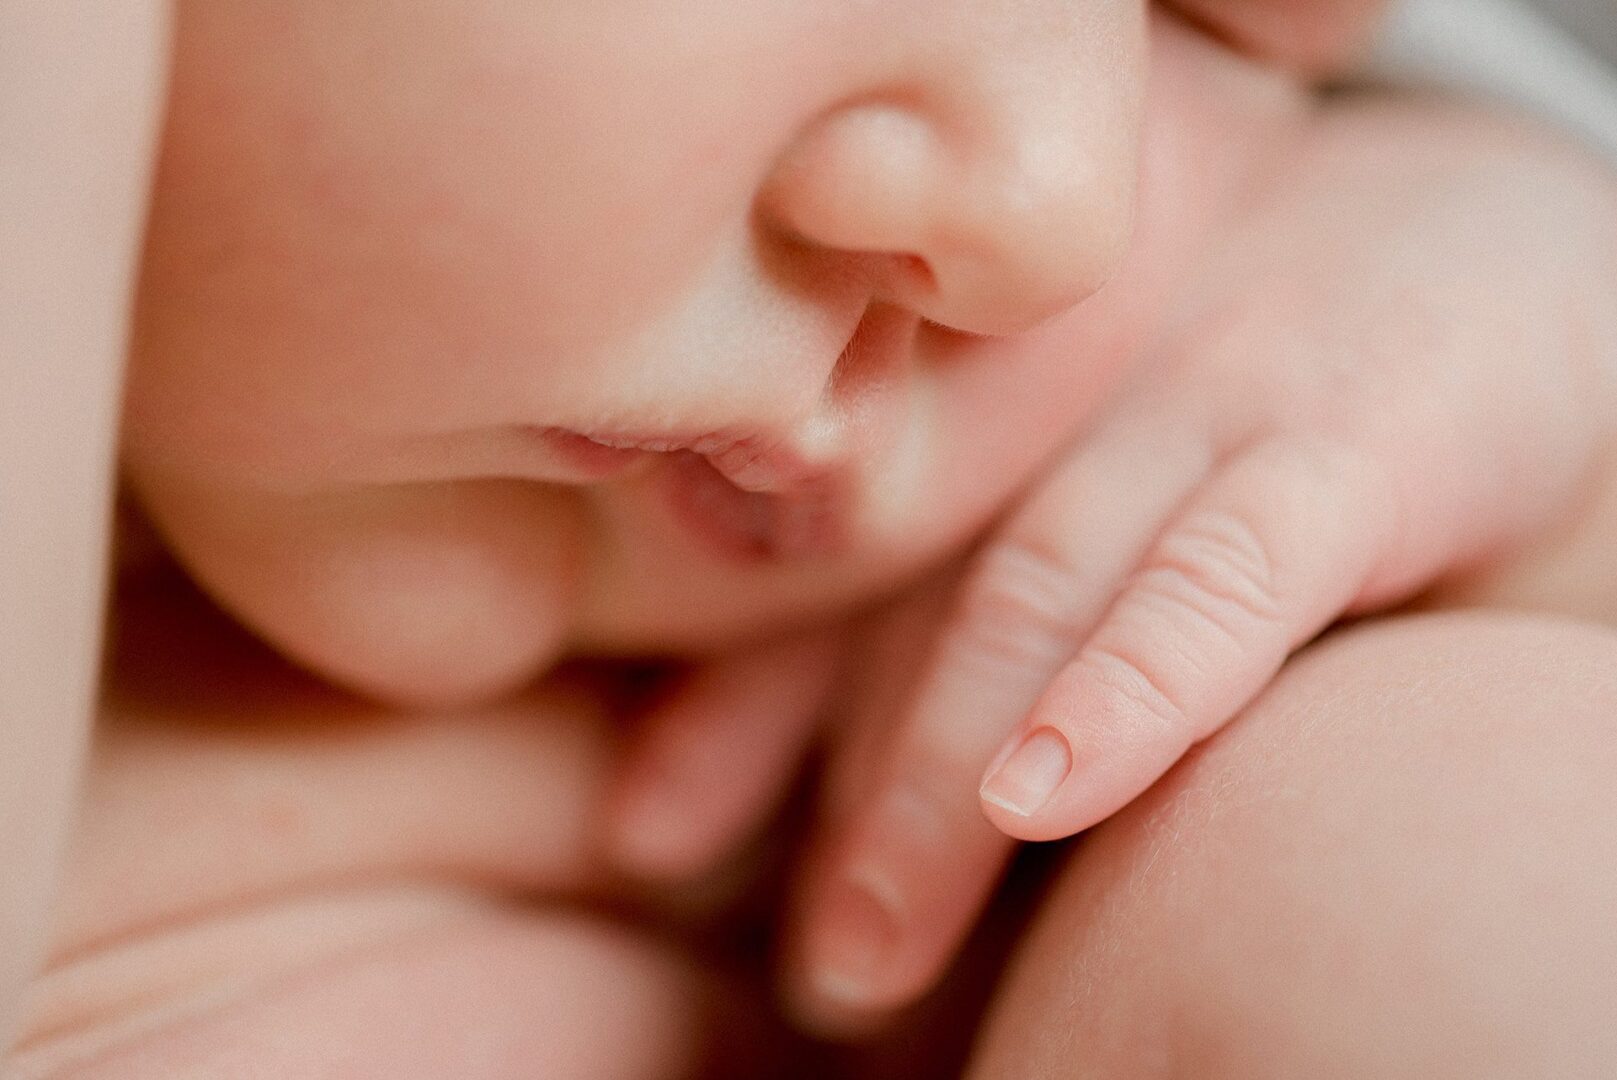 détails d'un nouveau-né, petite main et bouche